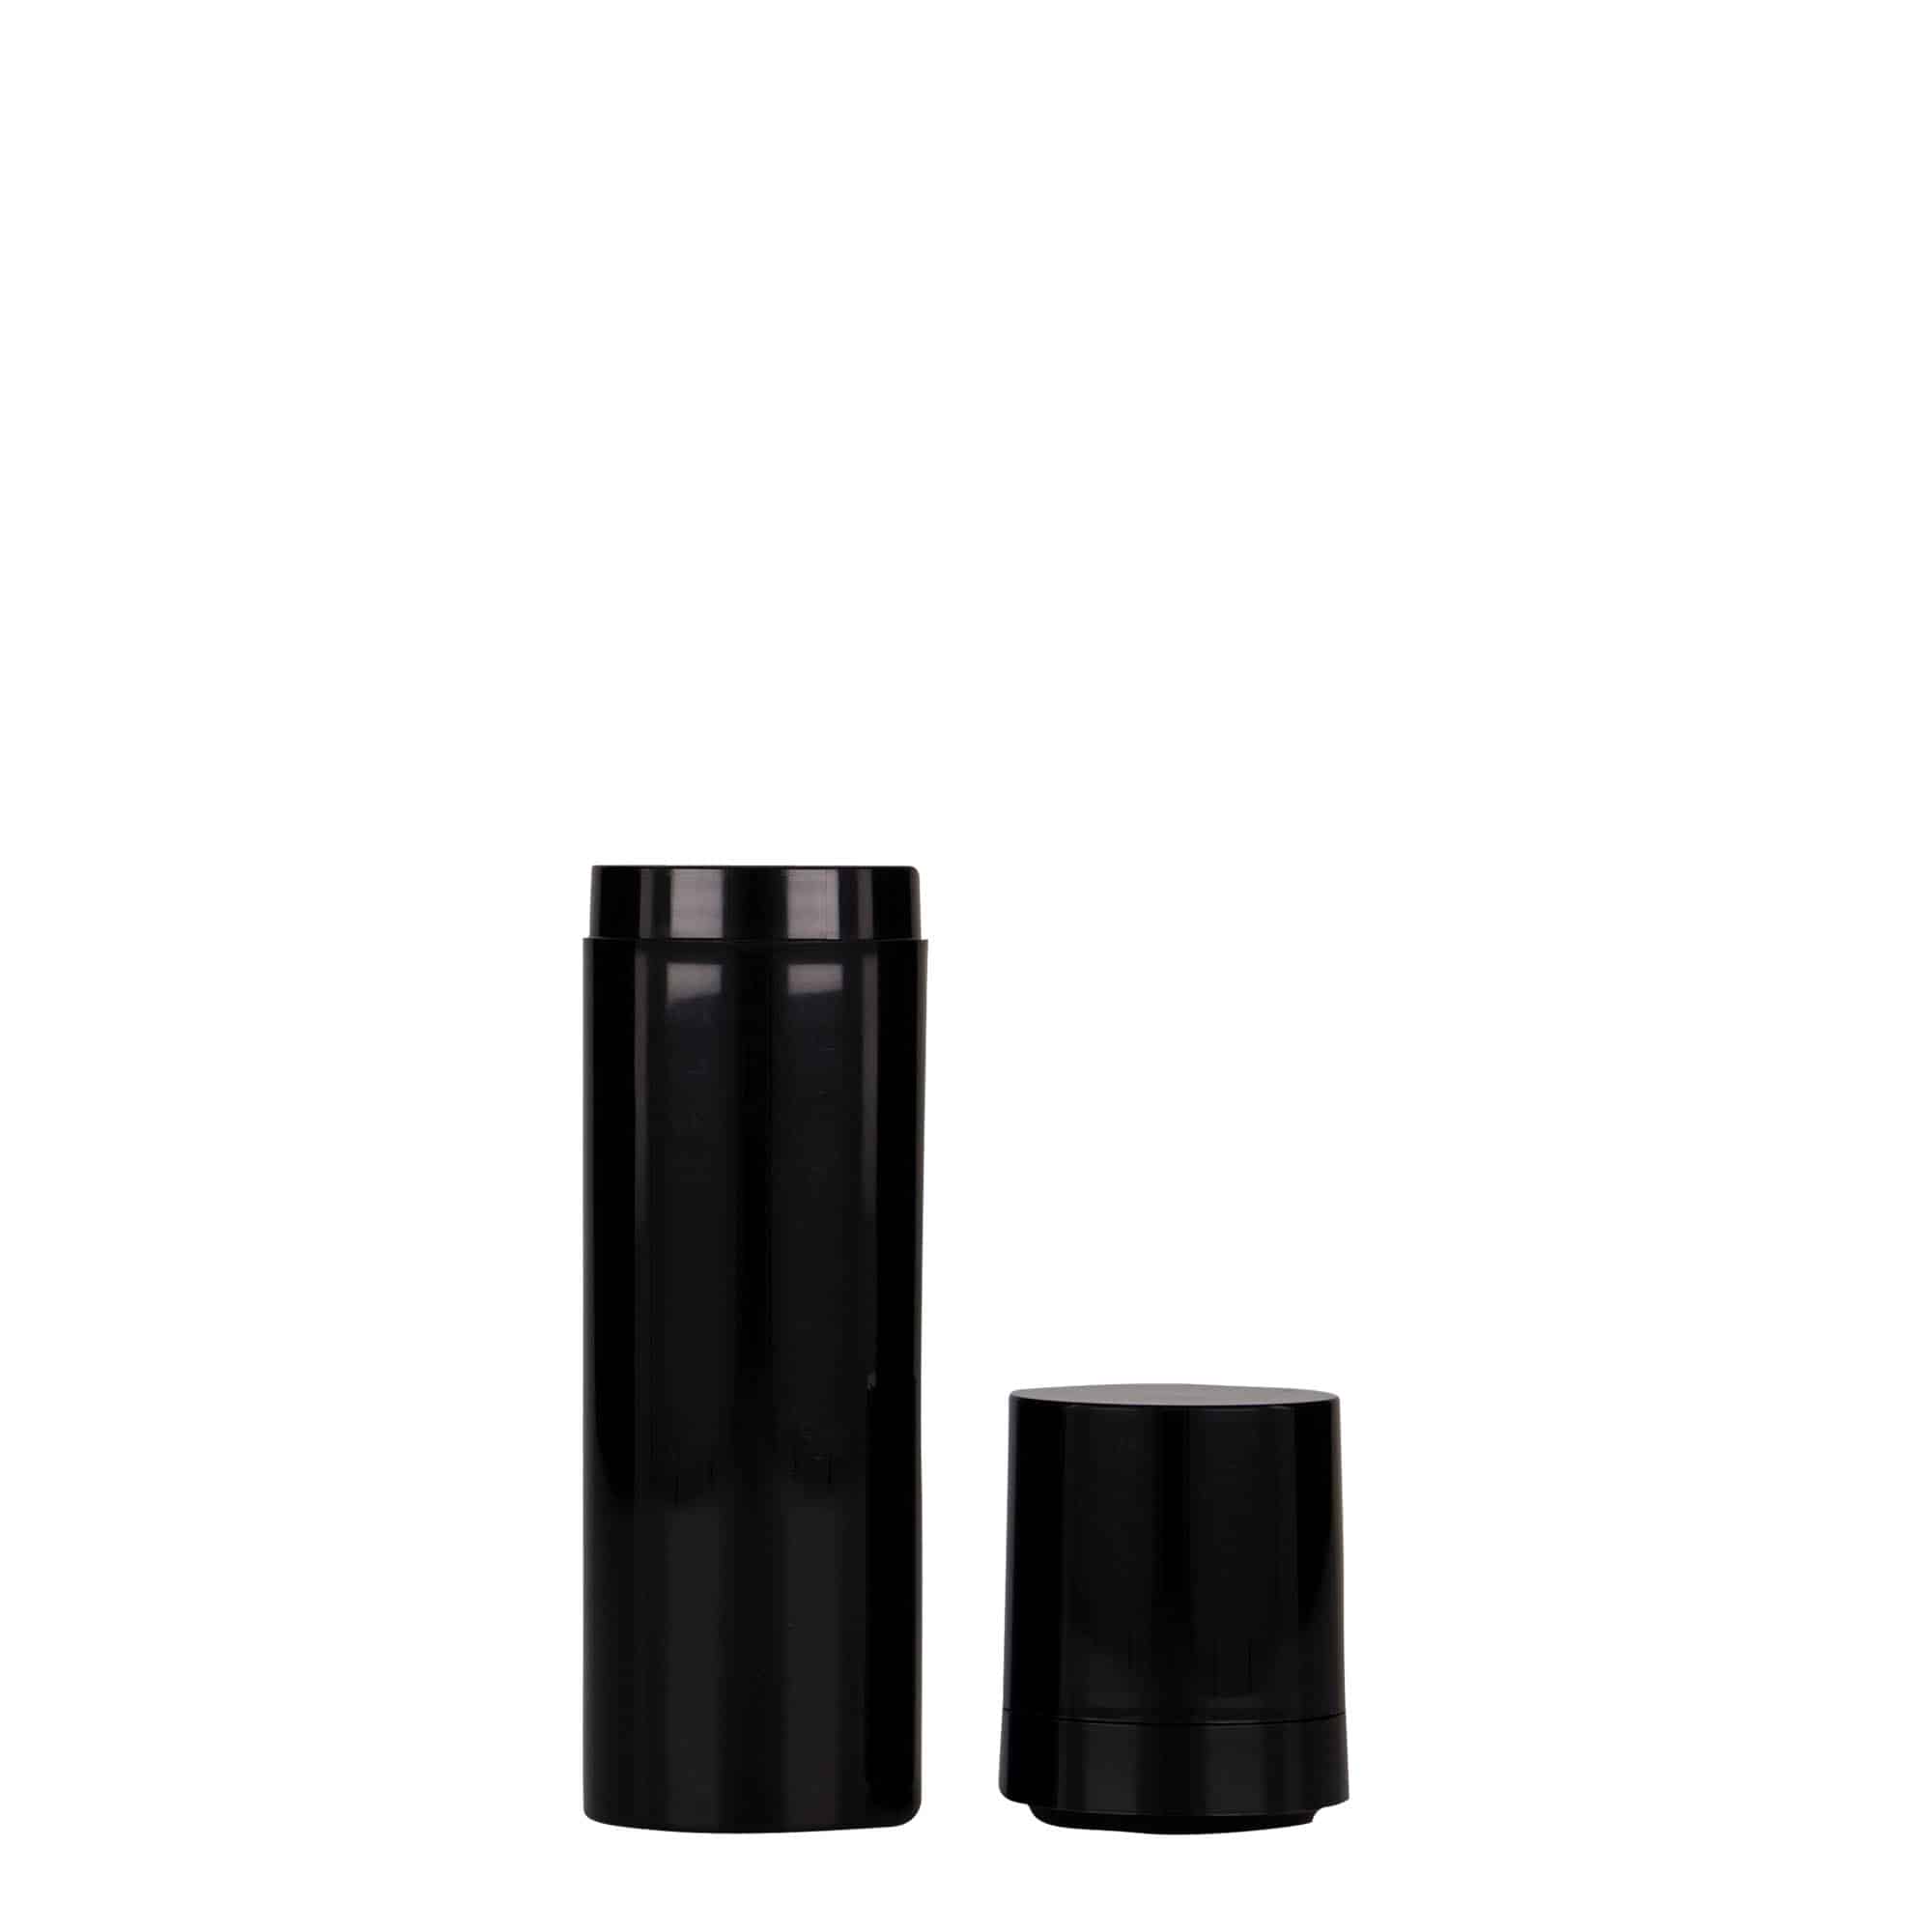 Bezvzduchový dávkovač 30 ml 'Micro', plast PP, černý